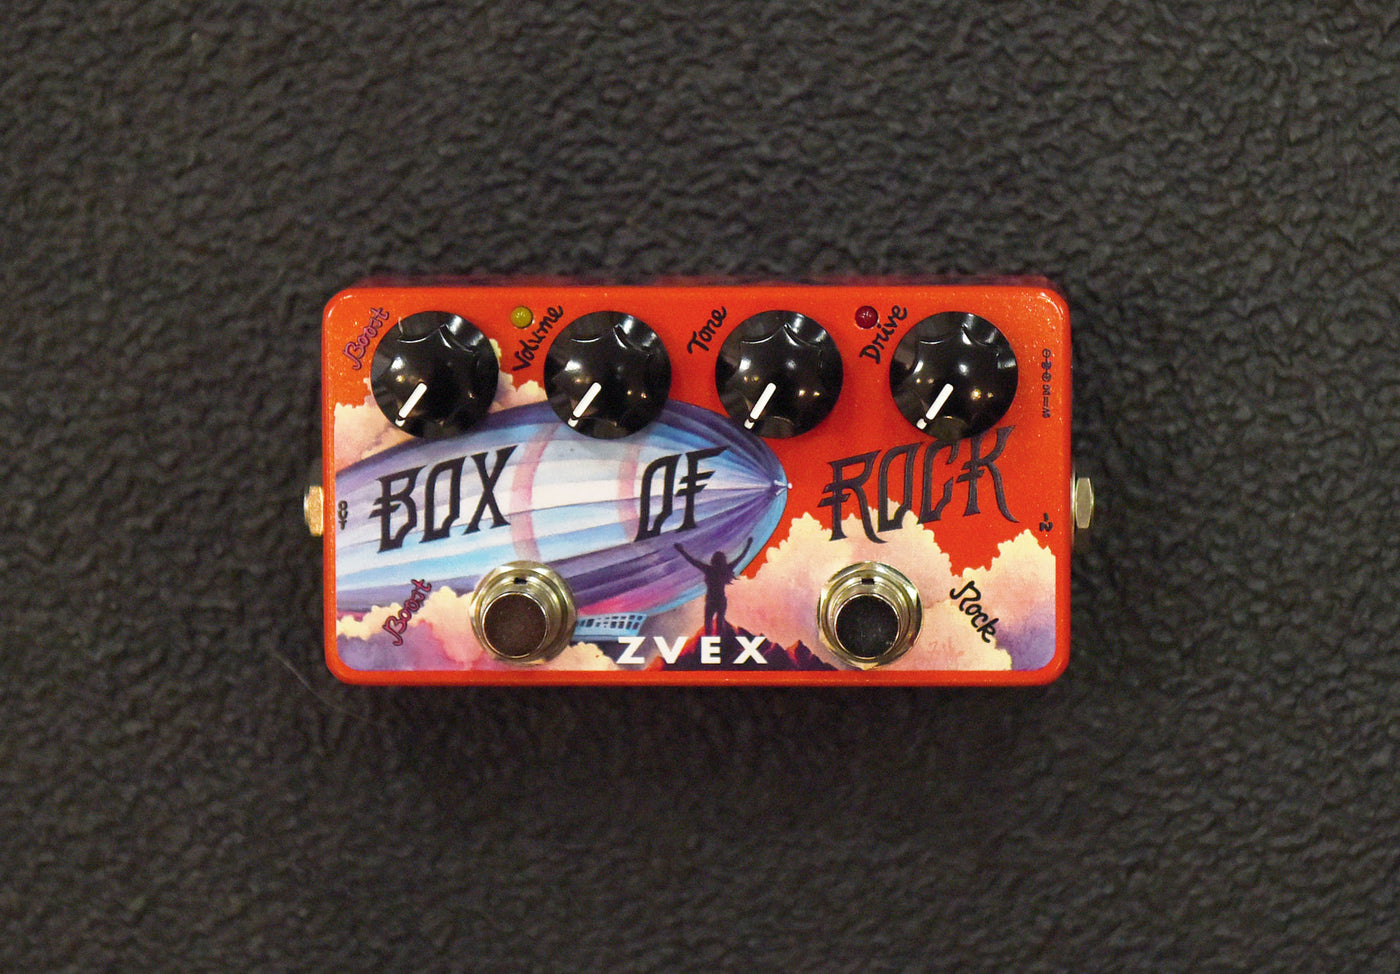 Box of Rock - Vexter